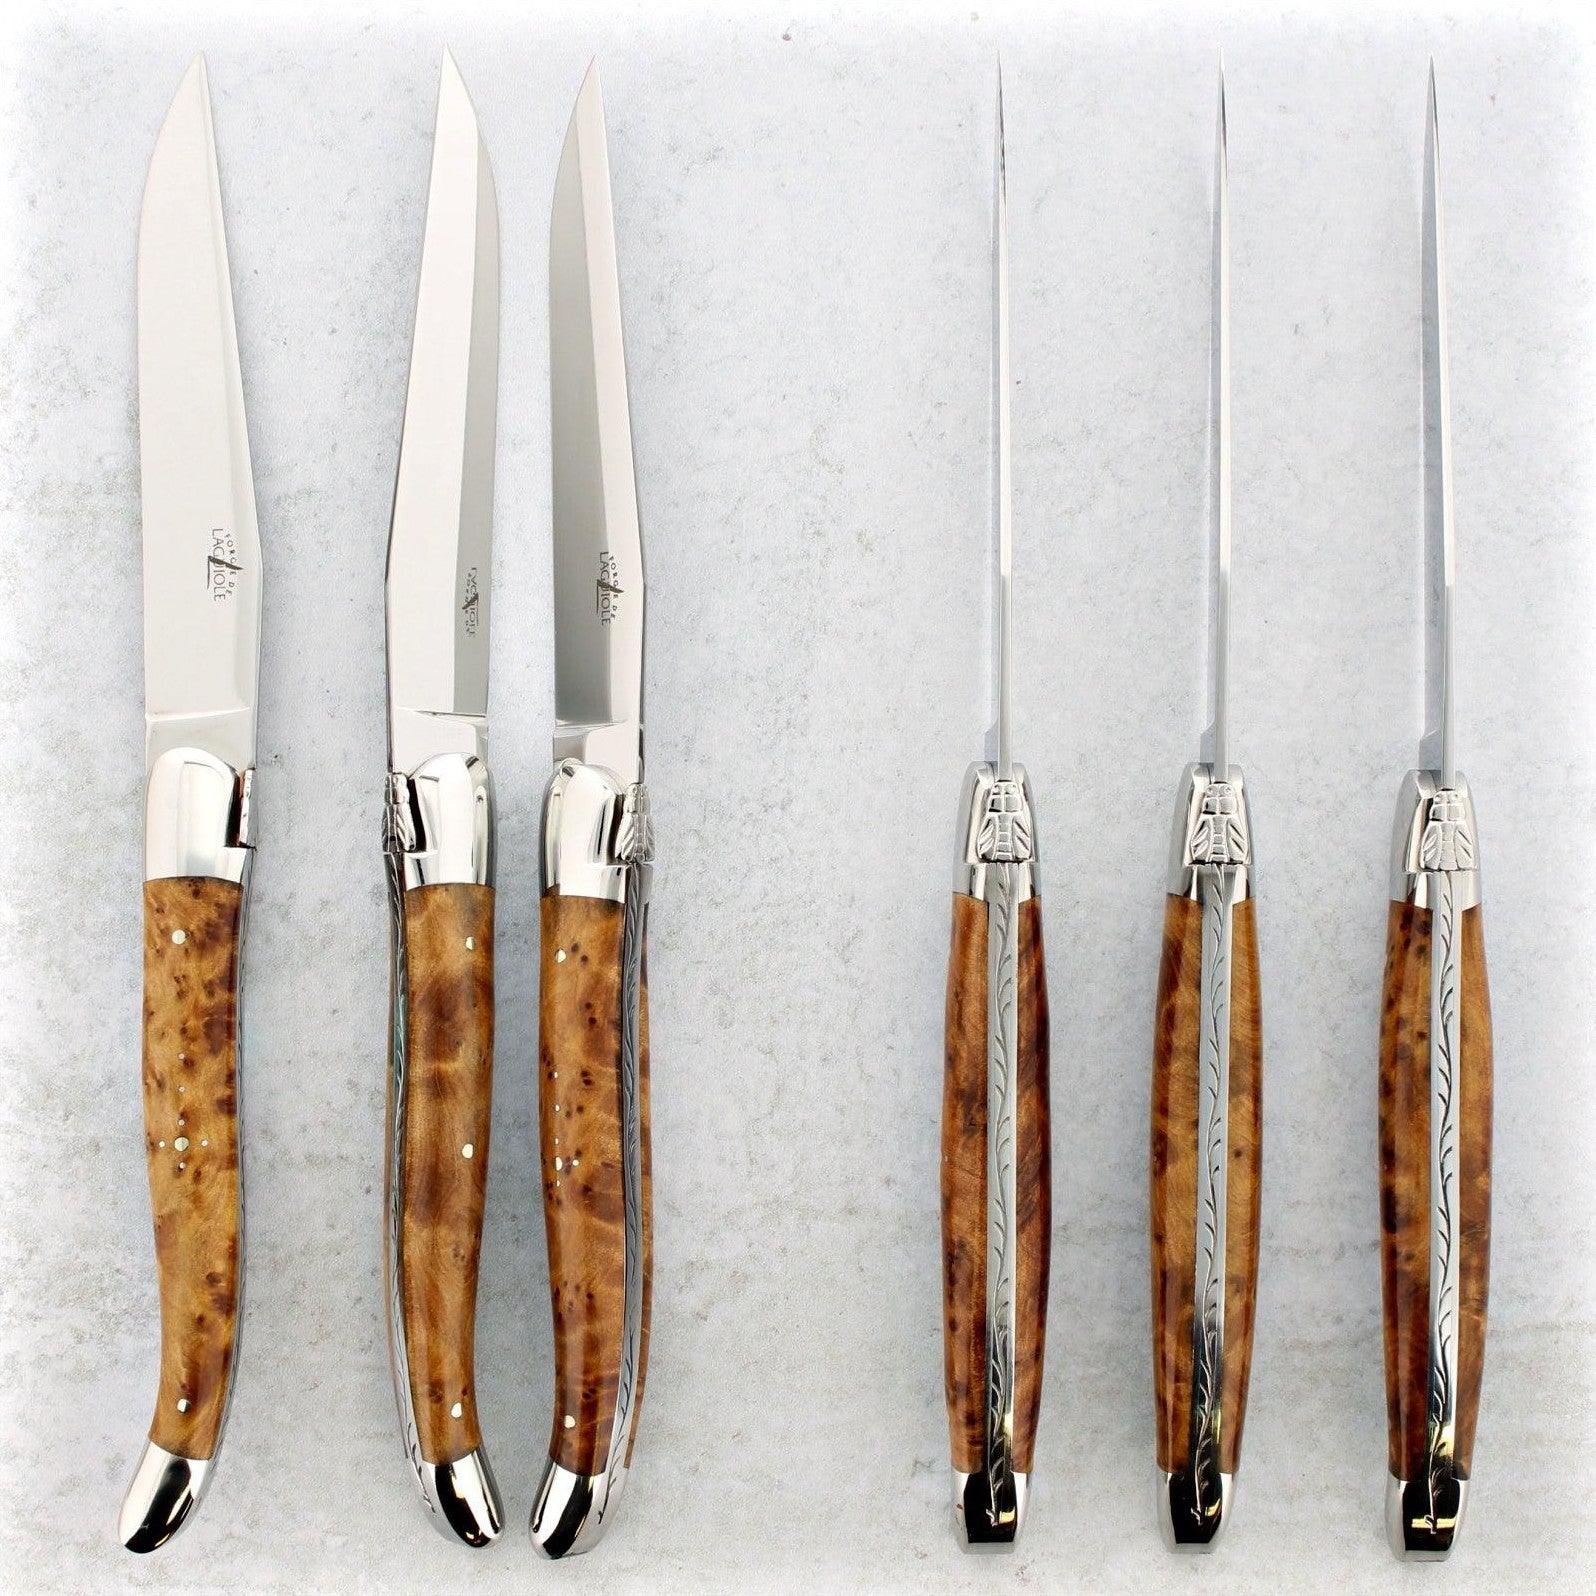 Laguiole Steak Knives - Laguiole Imports